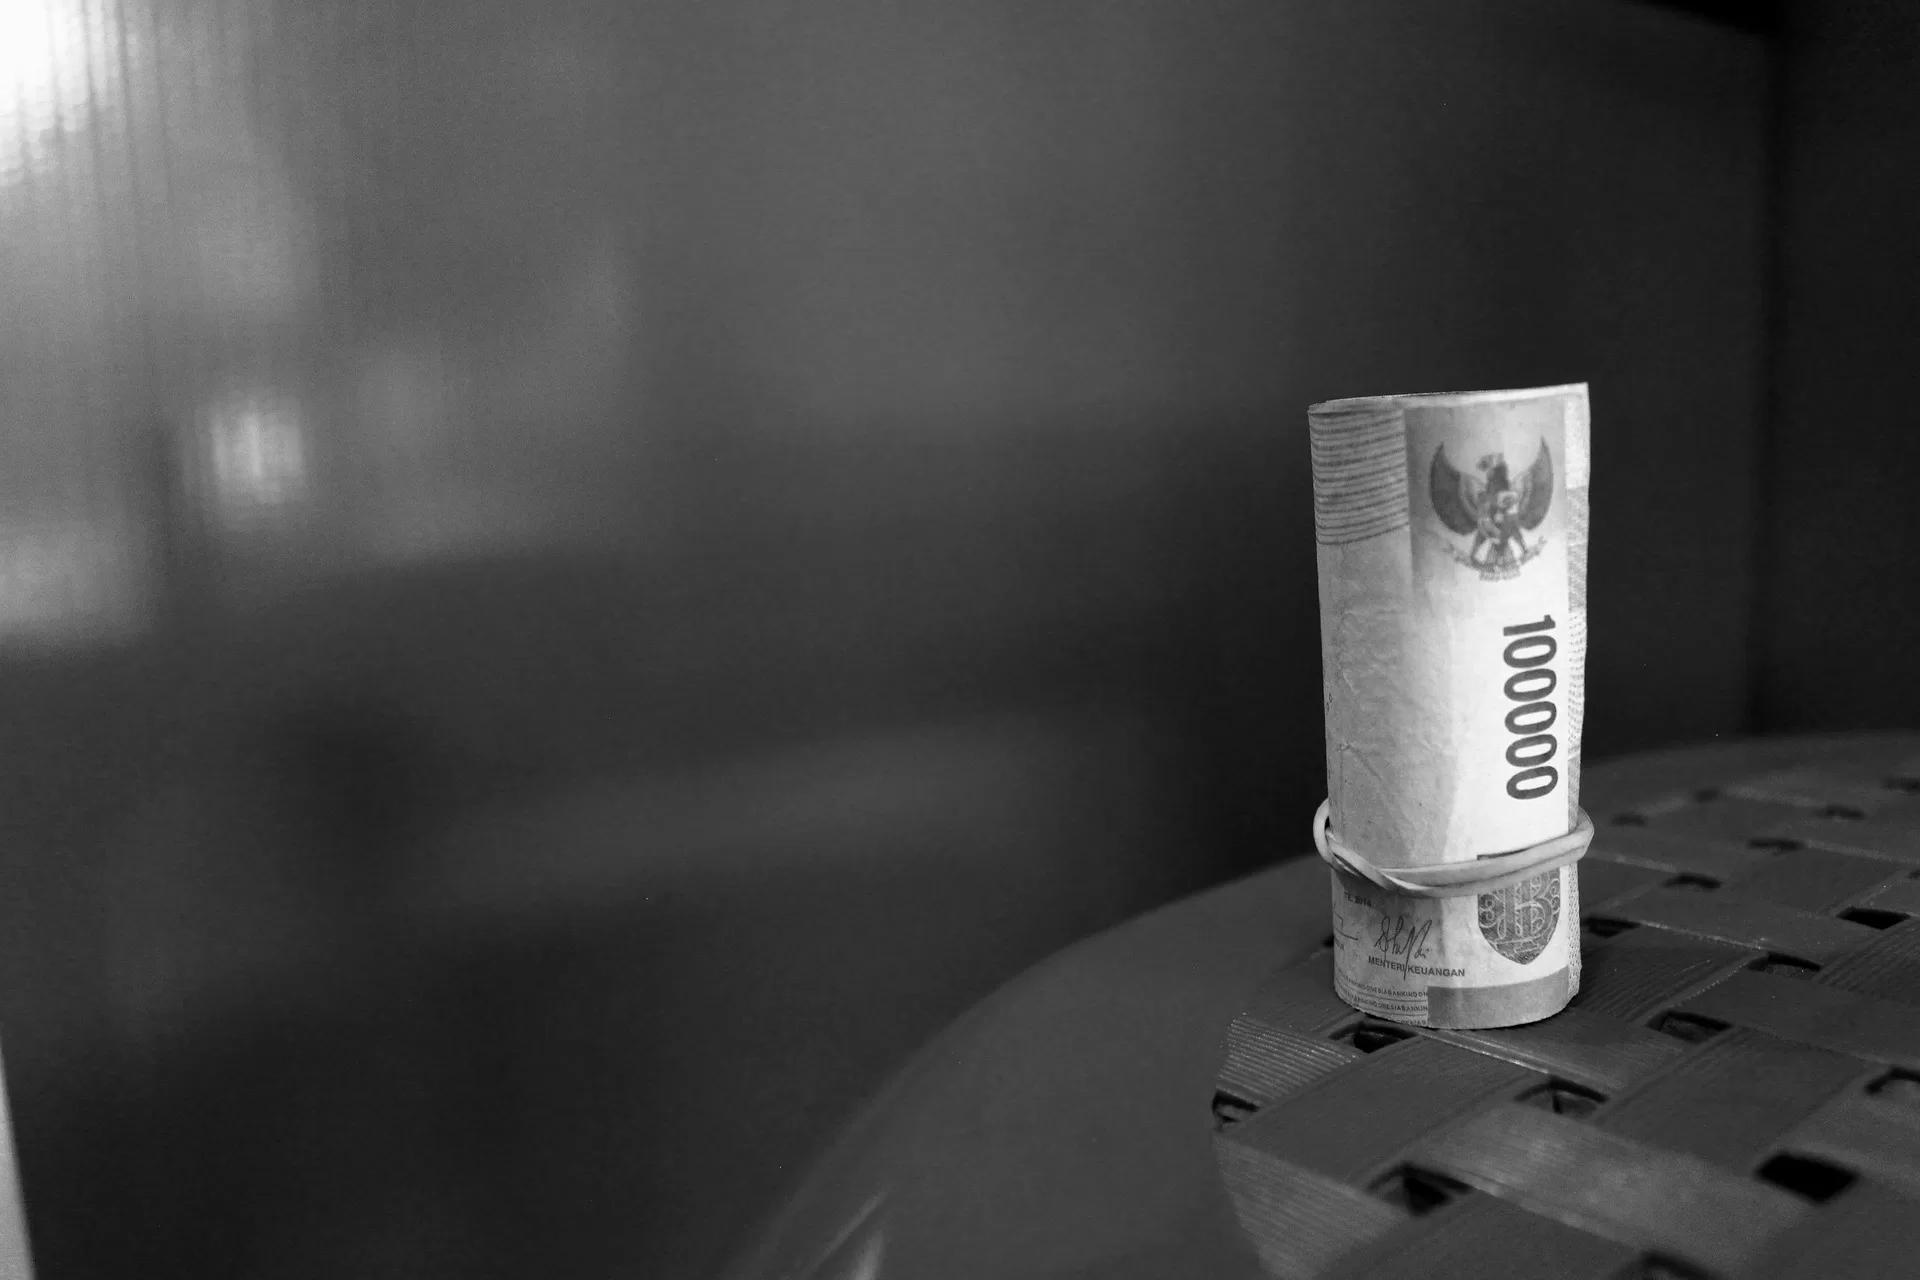 Gambar hitam putih uang ratusan ribu Rupiah yang digulung, ilustrasi cara mengatasi terlilit utang pinjol